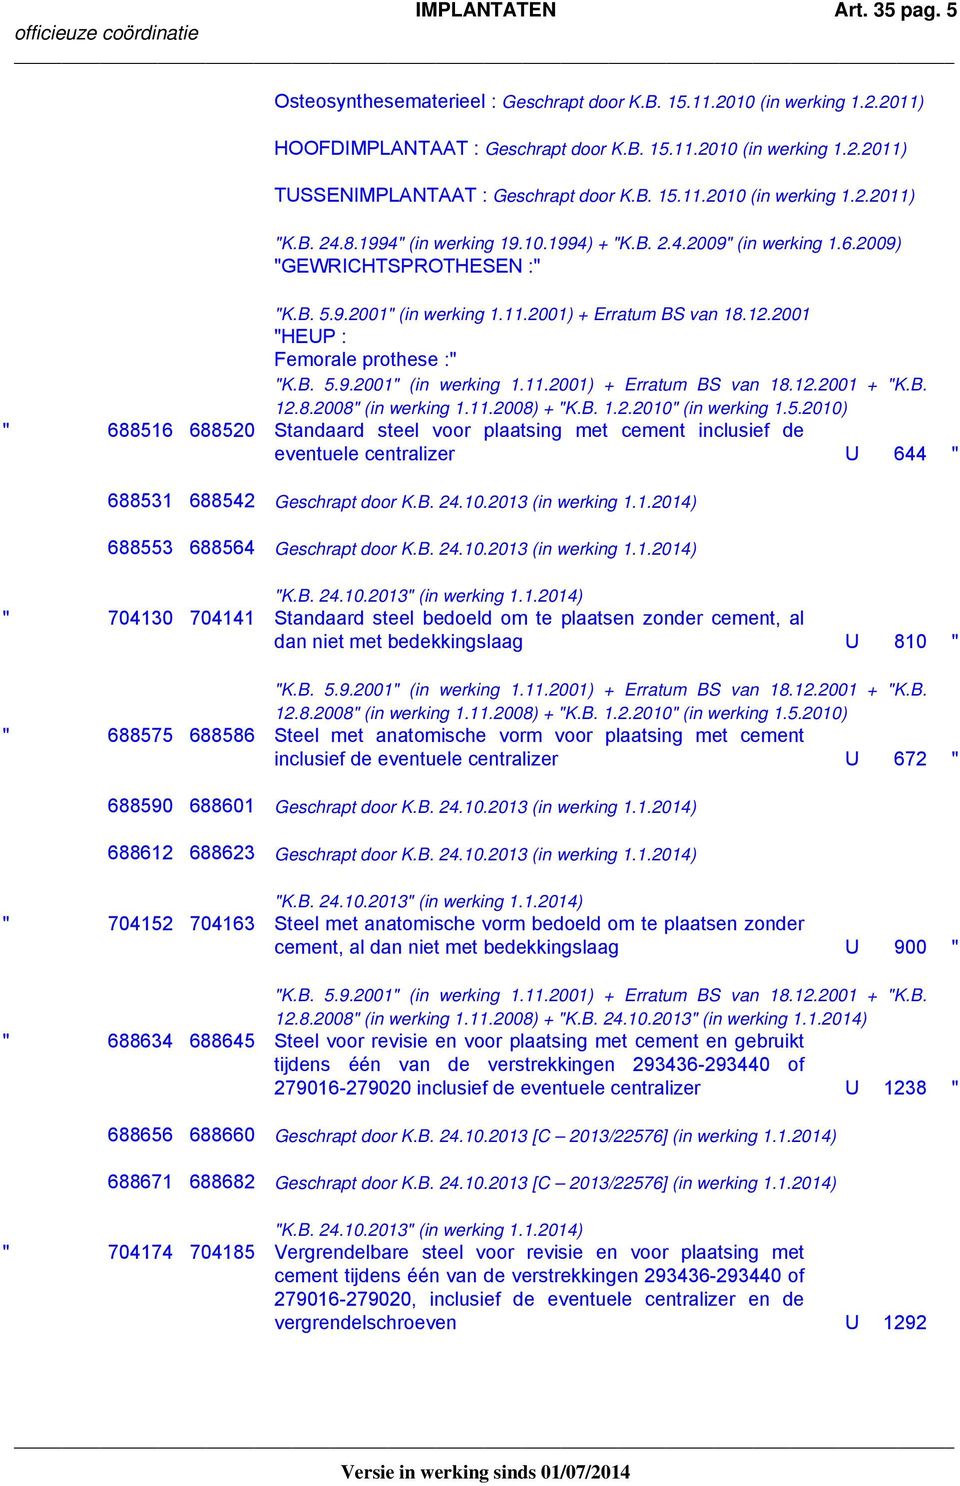 12.2001 "HEUP : Femorale prothese :" "K.B. 5.9.2001" (in werking 1.11.2001) + Erratum BS van 18.12.2001 + "K.B. 12.8.2008" (in werking 1.11.2008) + "K.B. 1.2.2010" (in werking 1.5.2010) " 688516 688520 Standaard steel voor plaatsing met cement inclusief de eventuele centralizer U 644 " 688531 688542 Geschrapt door K.